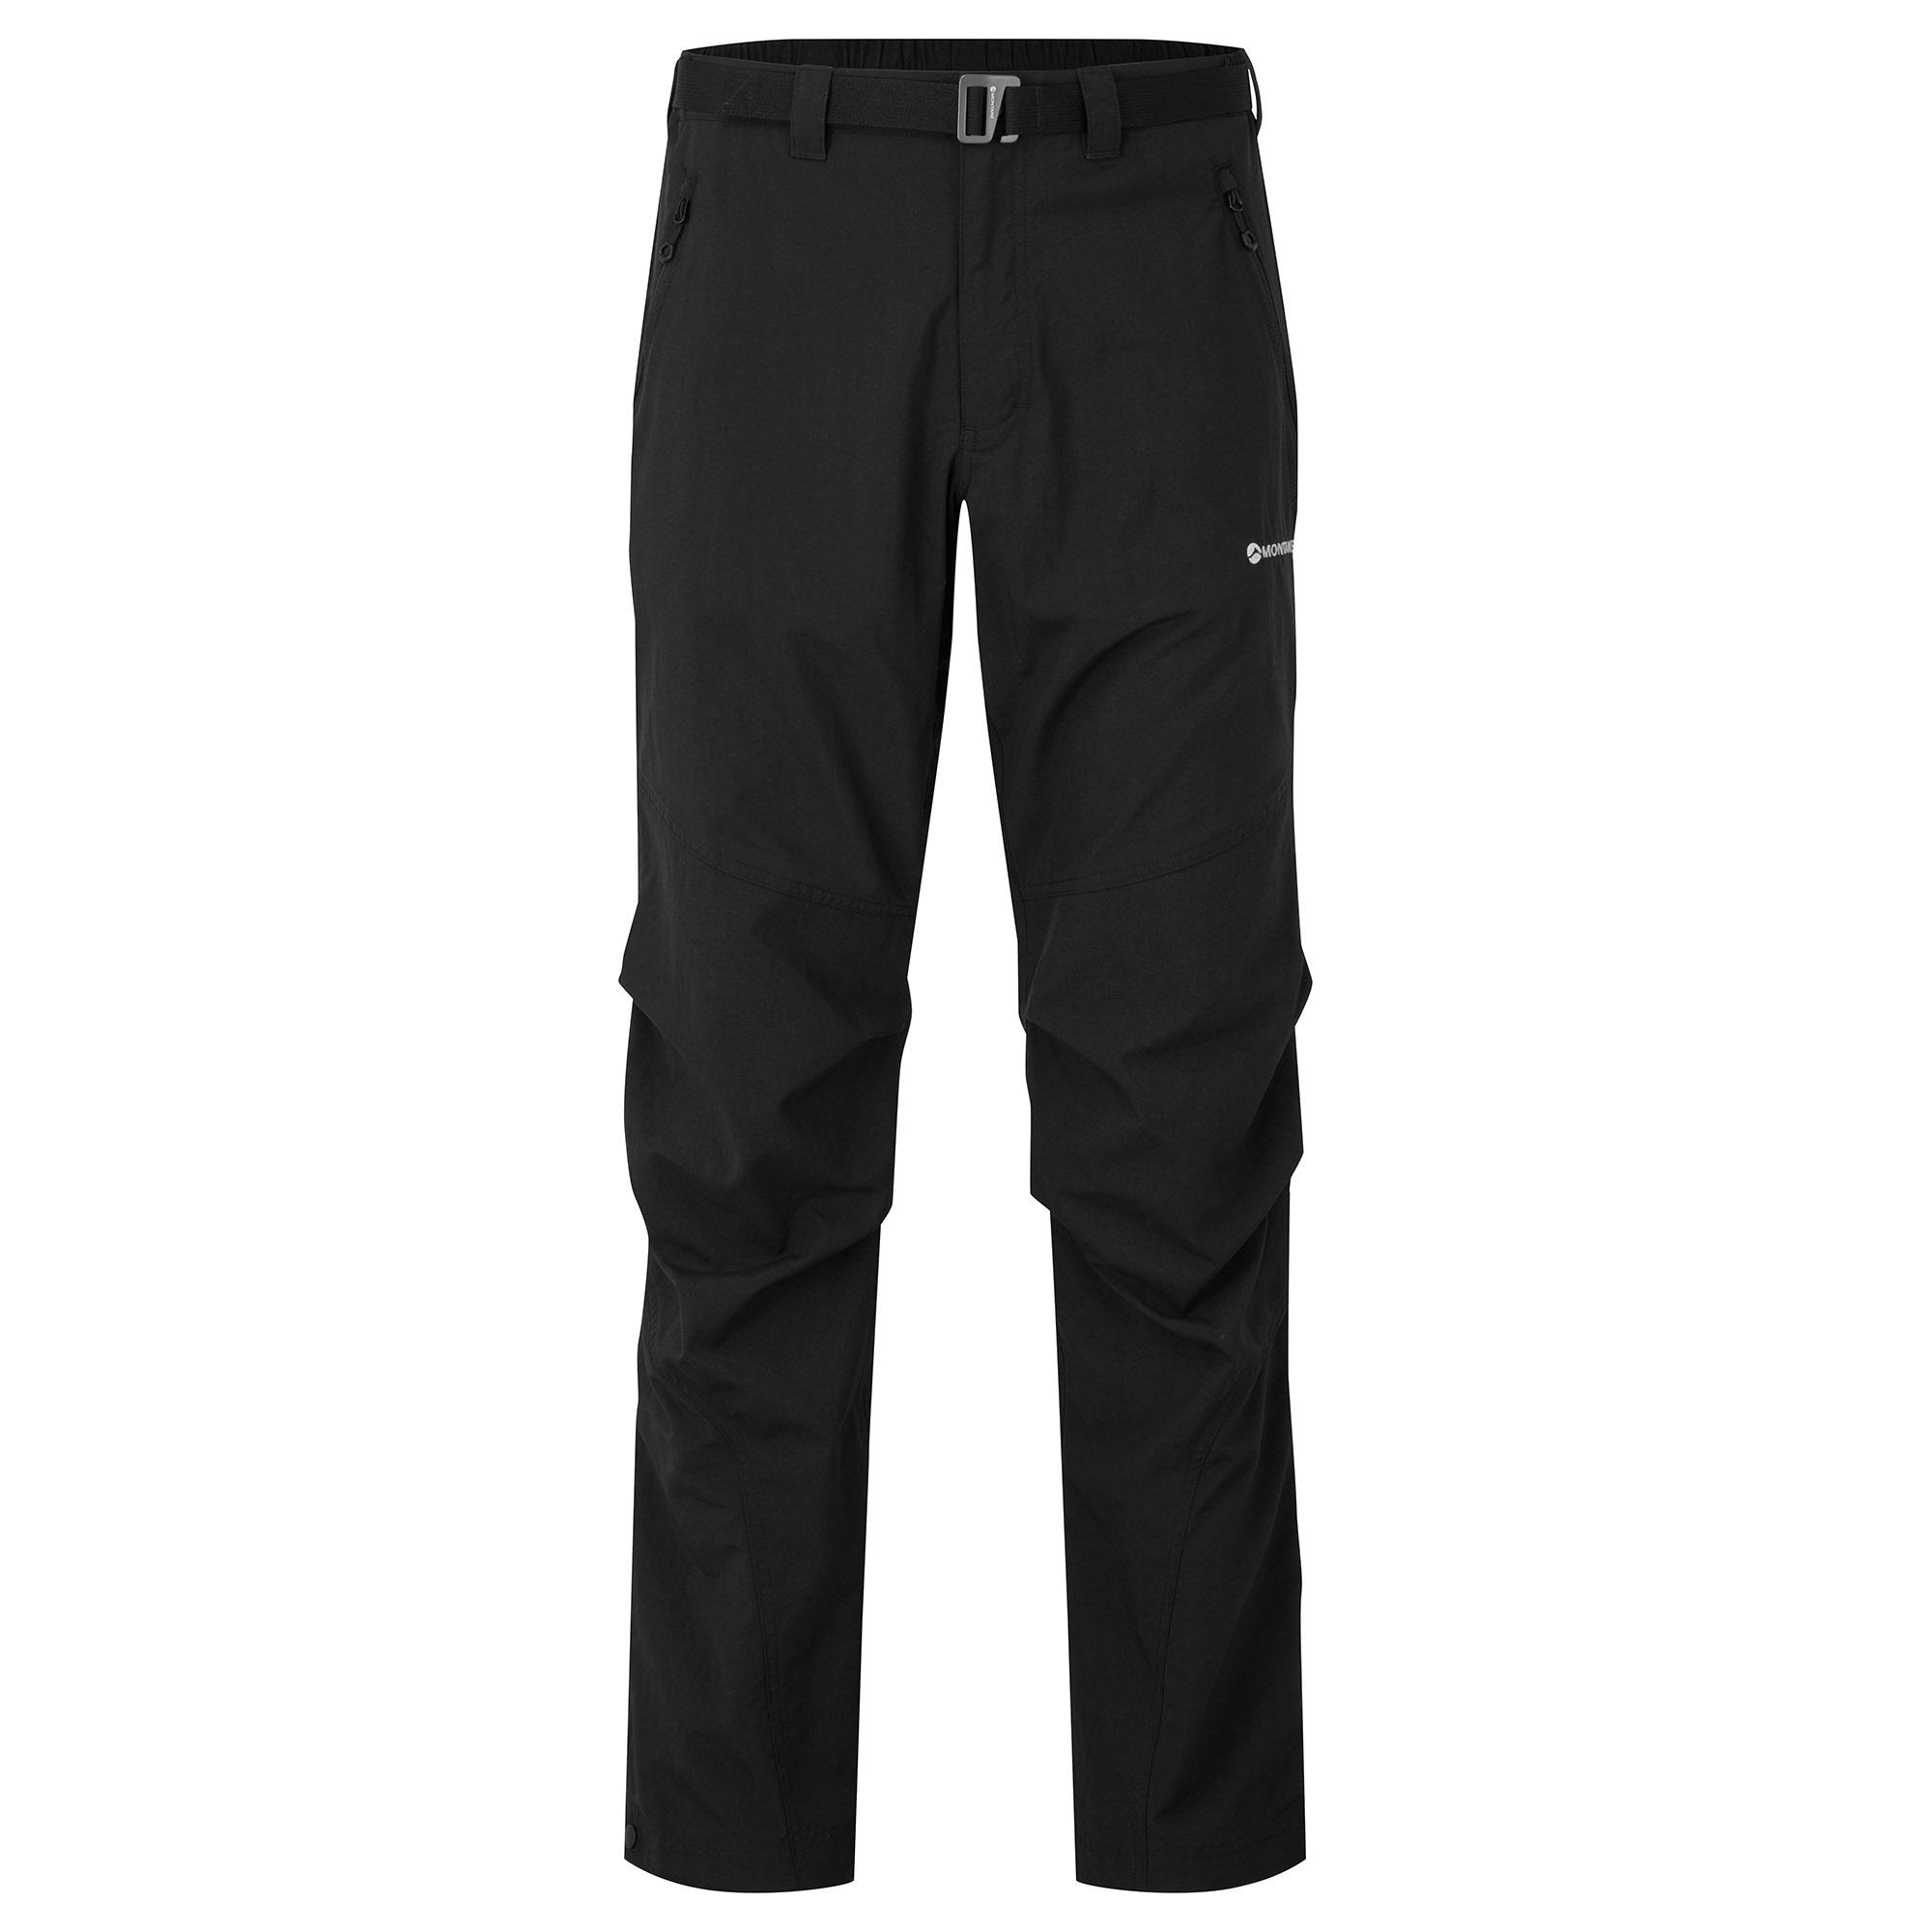 Montane pánské softshellové kalhoty Terra Pants - Zkrácené Nohavice Barva: black, Velikost: 28